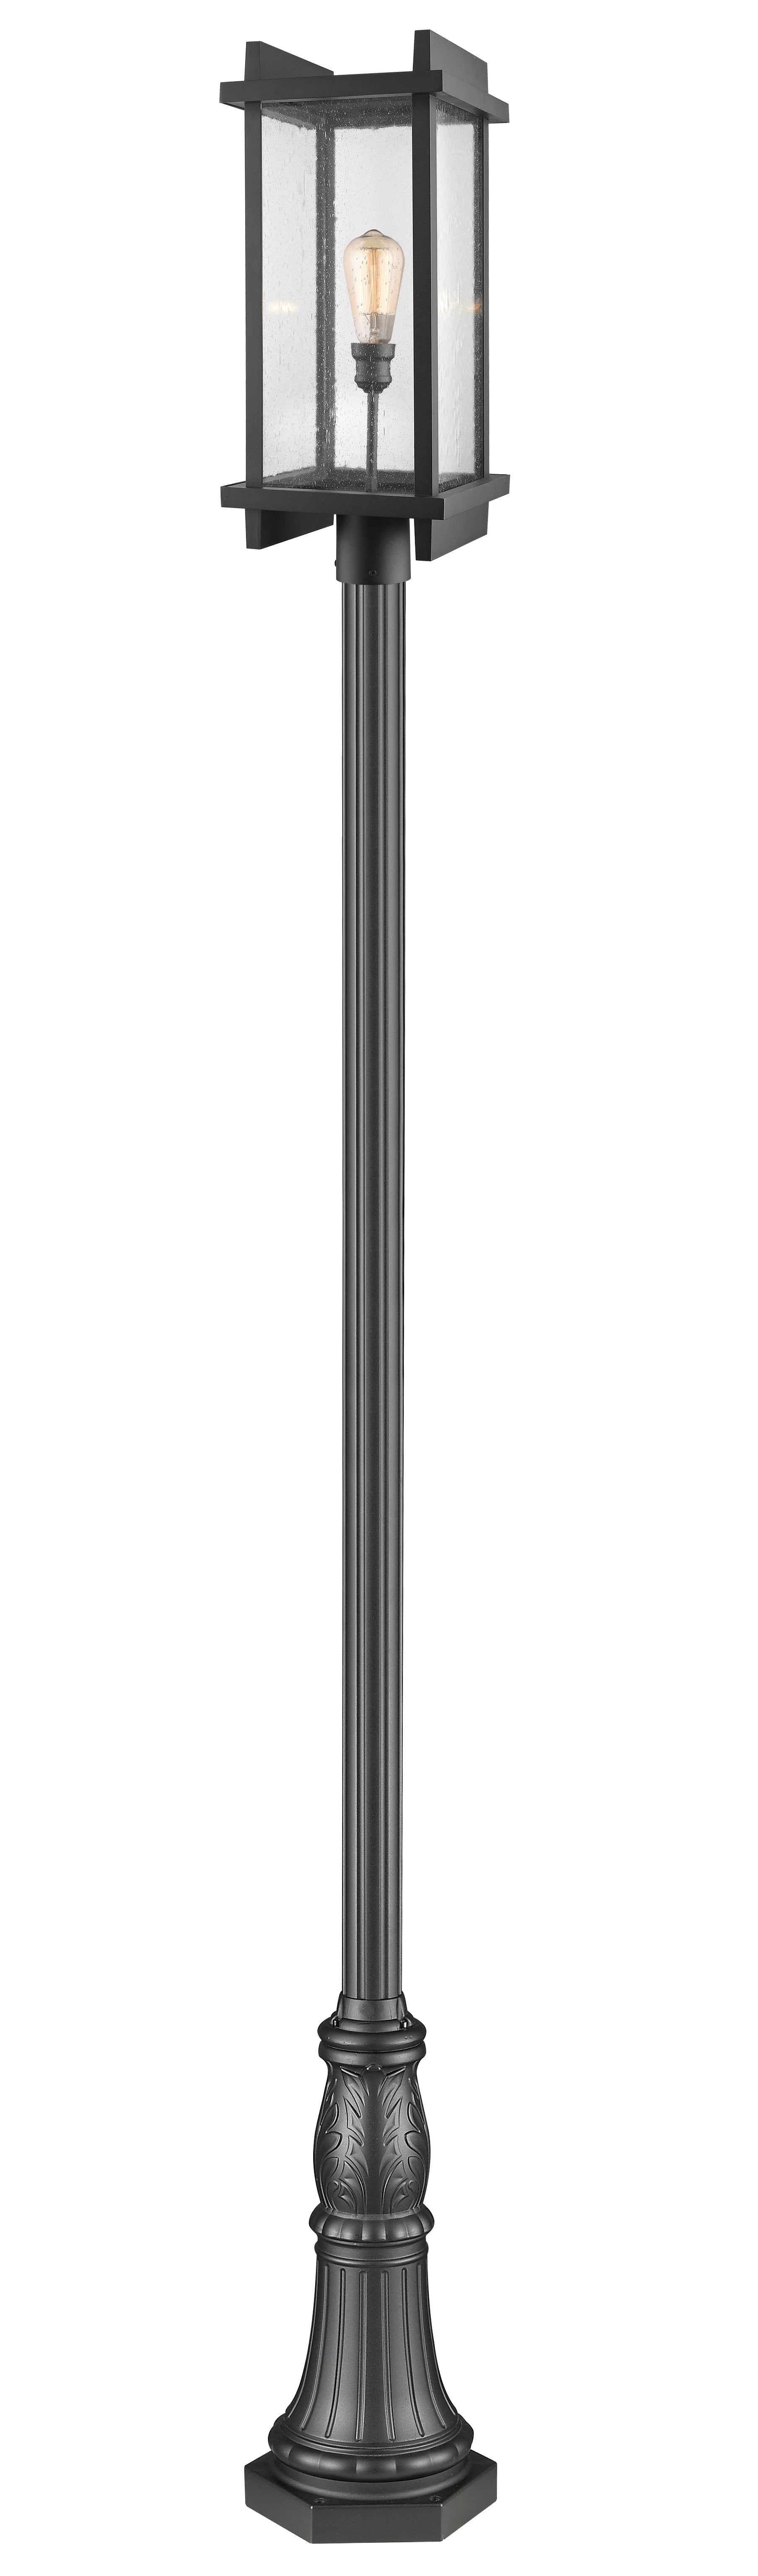 FALLOW Luminaire sur poteau Noir - 565PHBR-518P-BK | Z-LITE